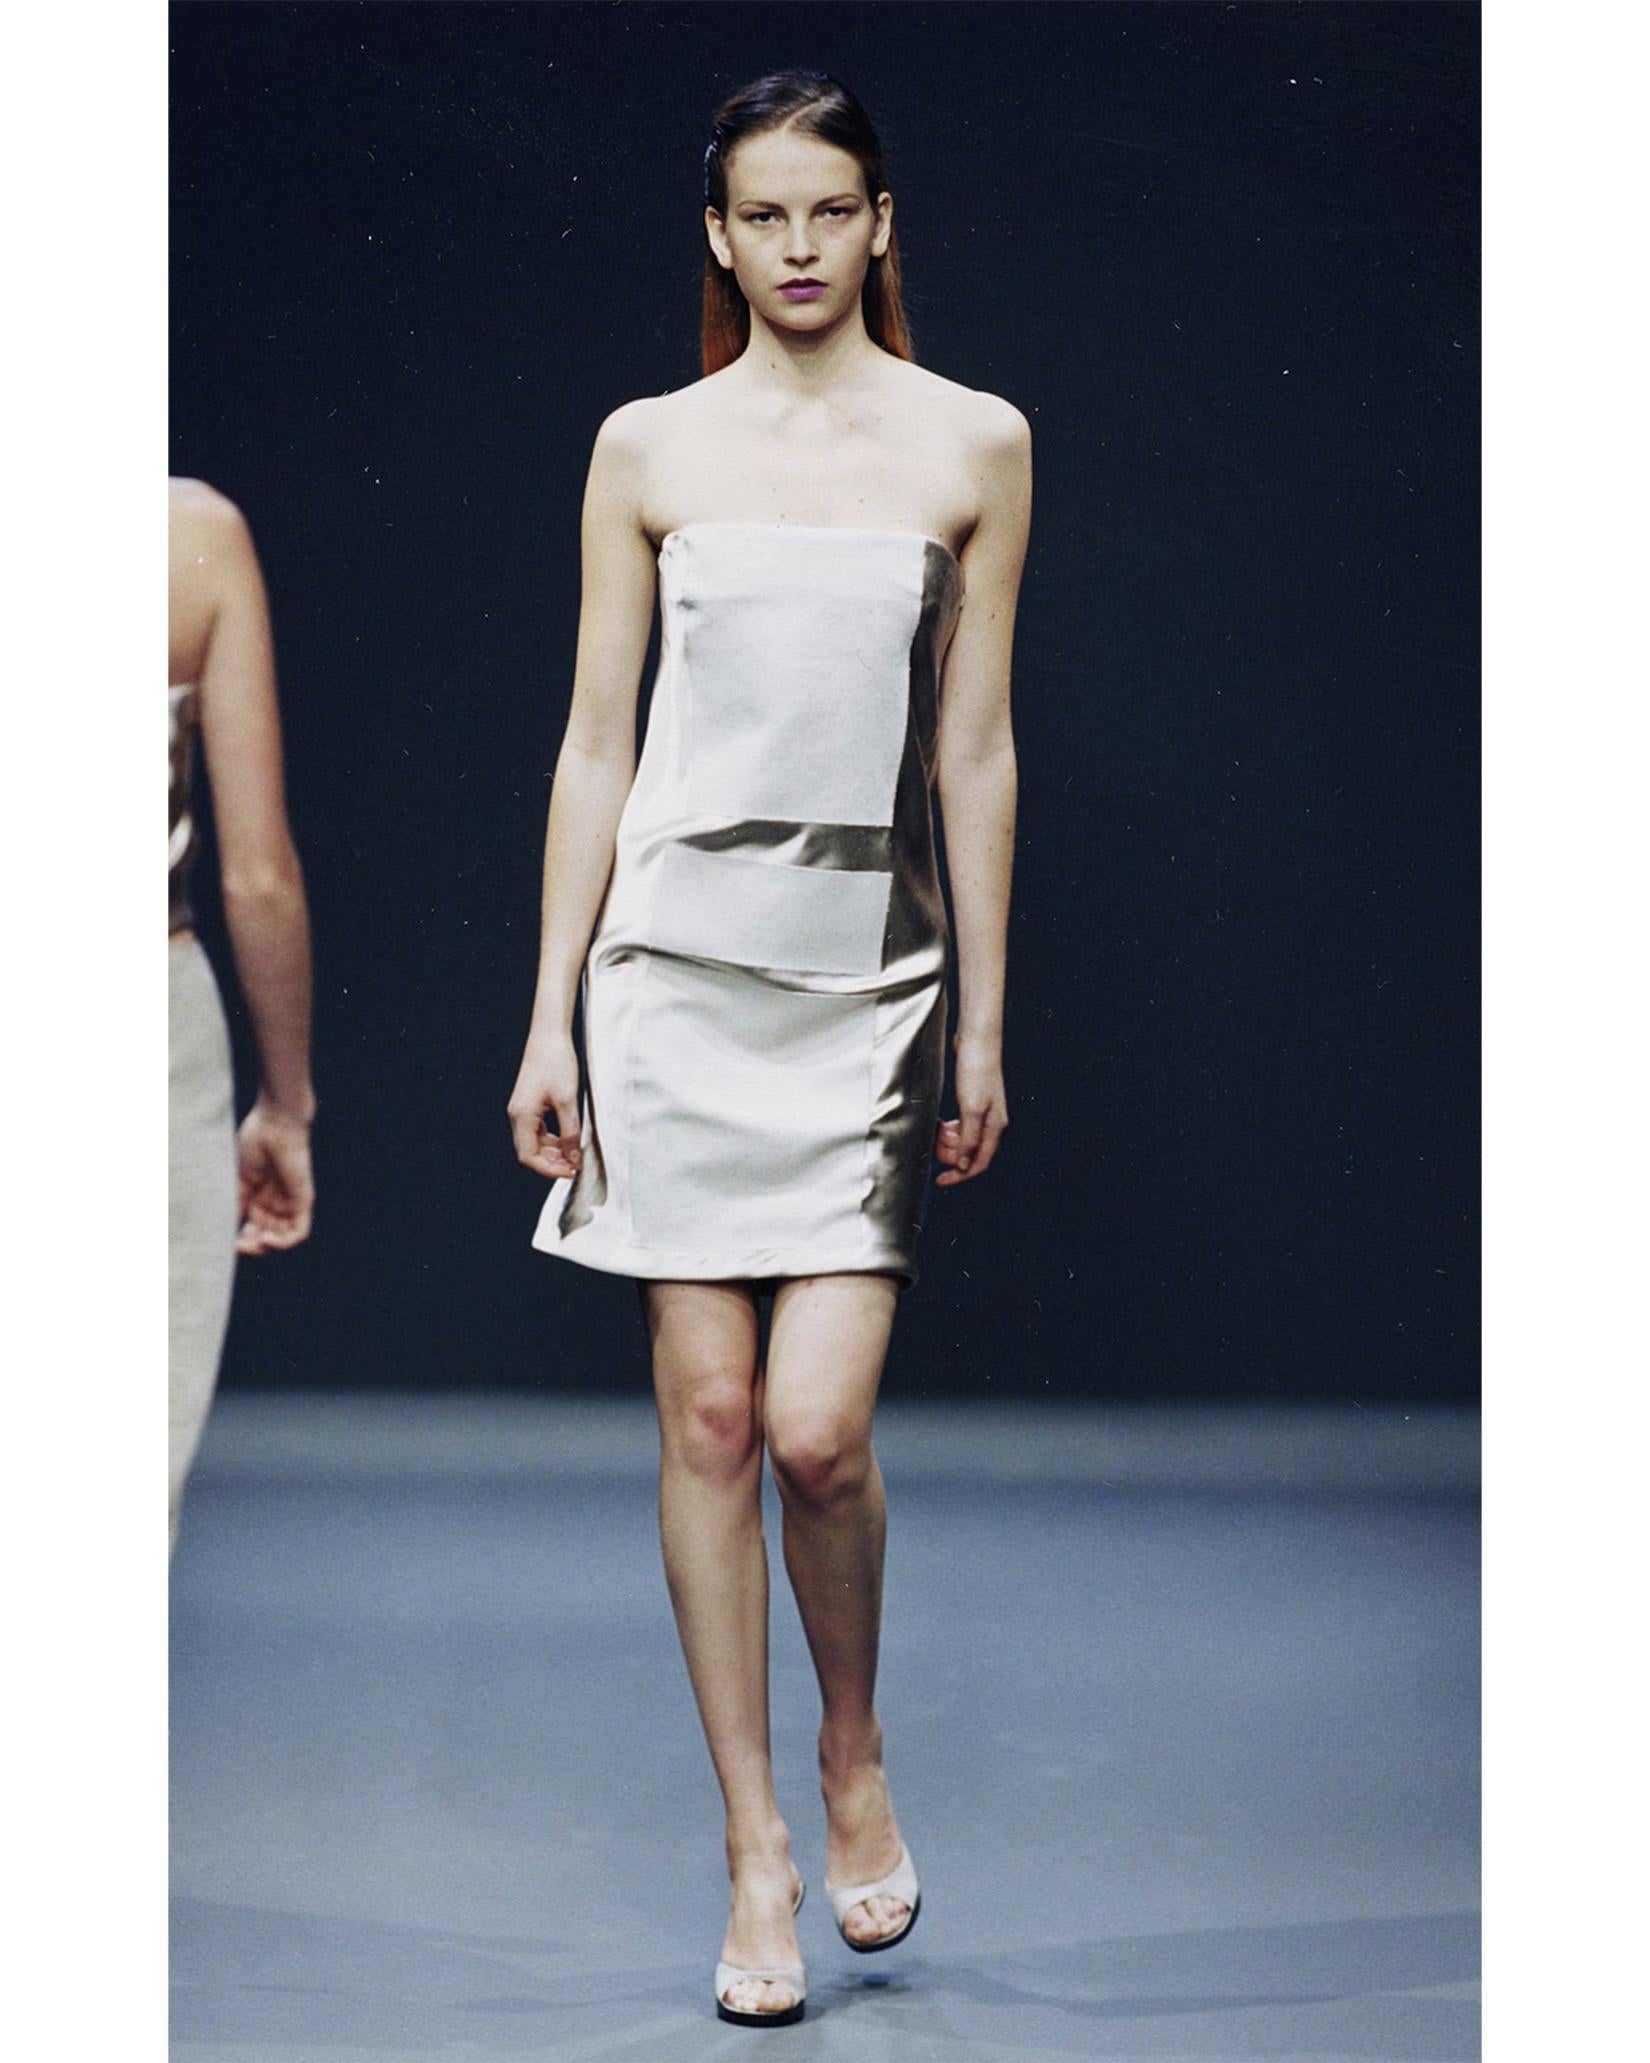 S/S 1998 Prada by Miuccia Prada - Mini robe sans bretelles en satin de soie nude à motifs géométriques. Fermeture éclair latérale dissimulée. Satin de soie contrastant avec panneaux géométriques en lin mélangé mat sur le devant et le dos. Dessus de